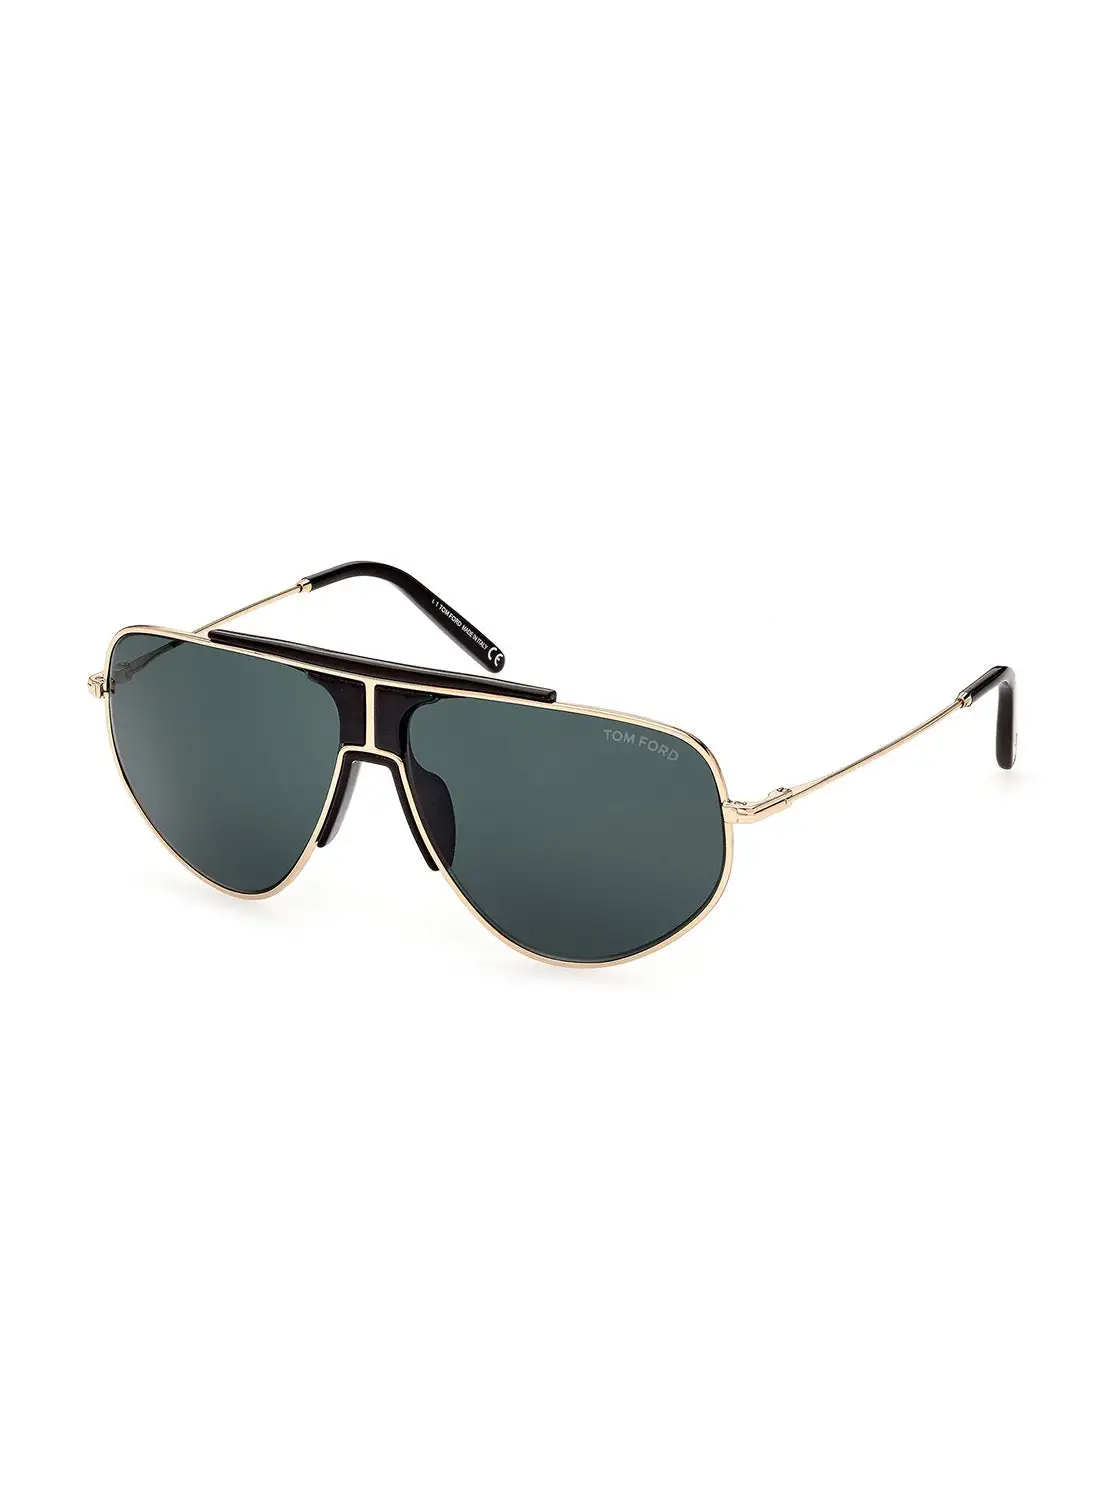 TOM FORD Men's UV Protection Pilot Sunglasses - FT092828V61 - Lens Size: 61 Mm